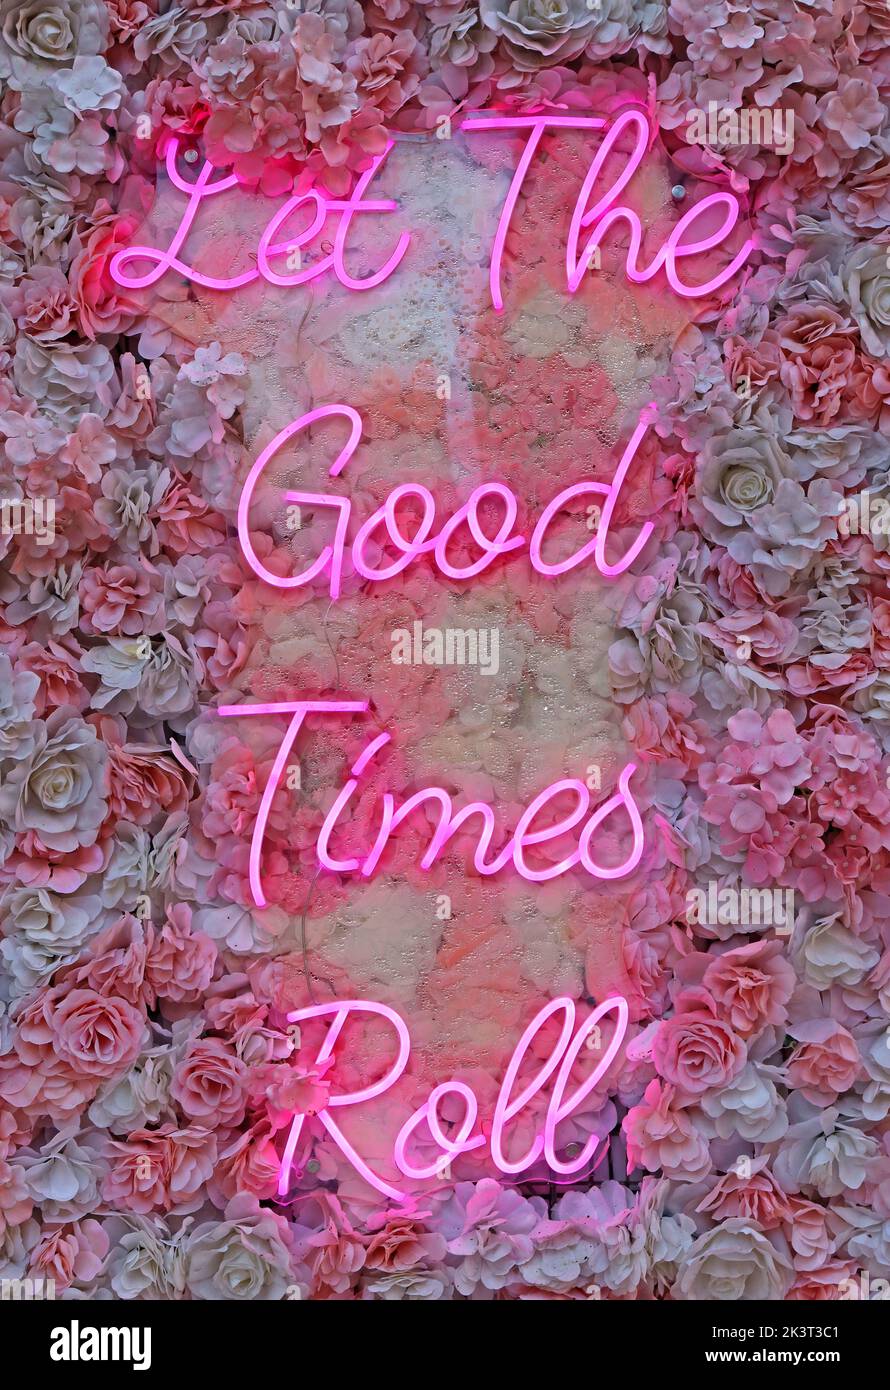 Lass die guten Zeiten Rollen, rosa Neonschild auf Blumen - optimistisch Stockfoto